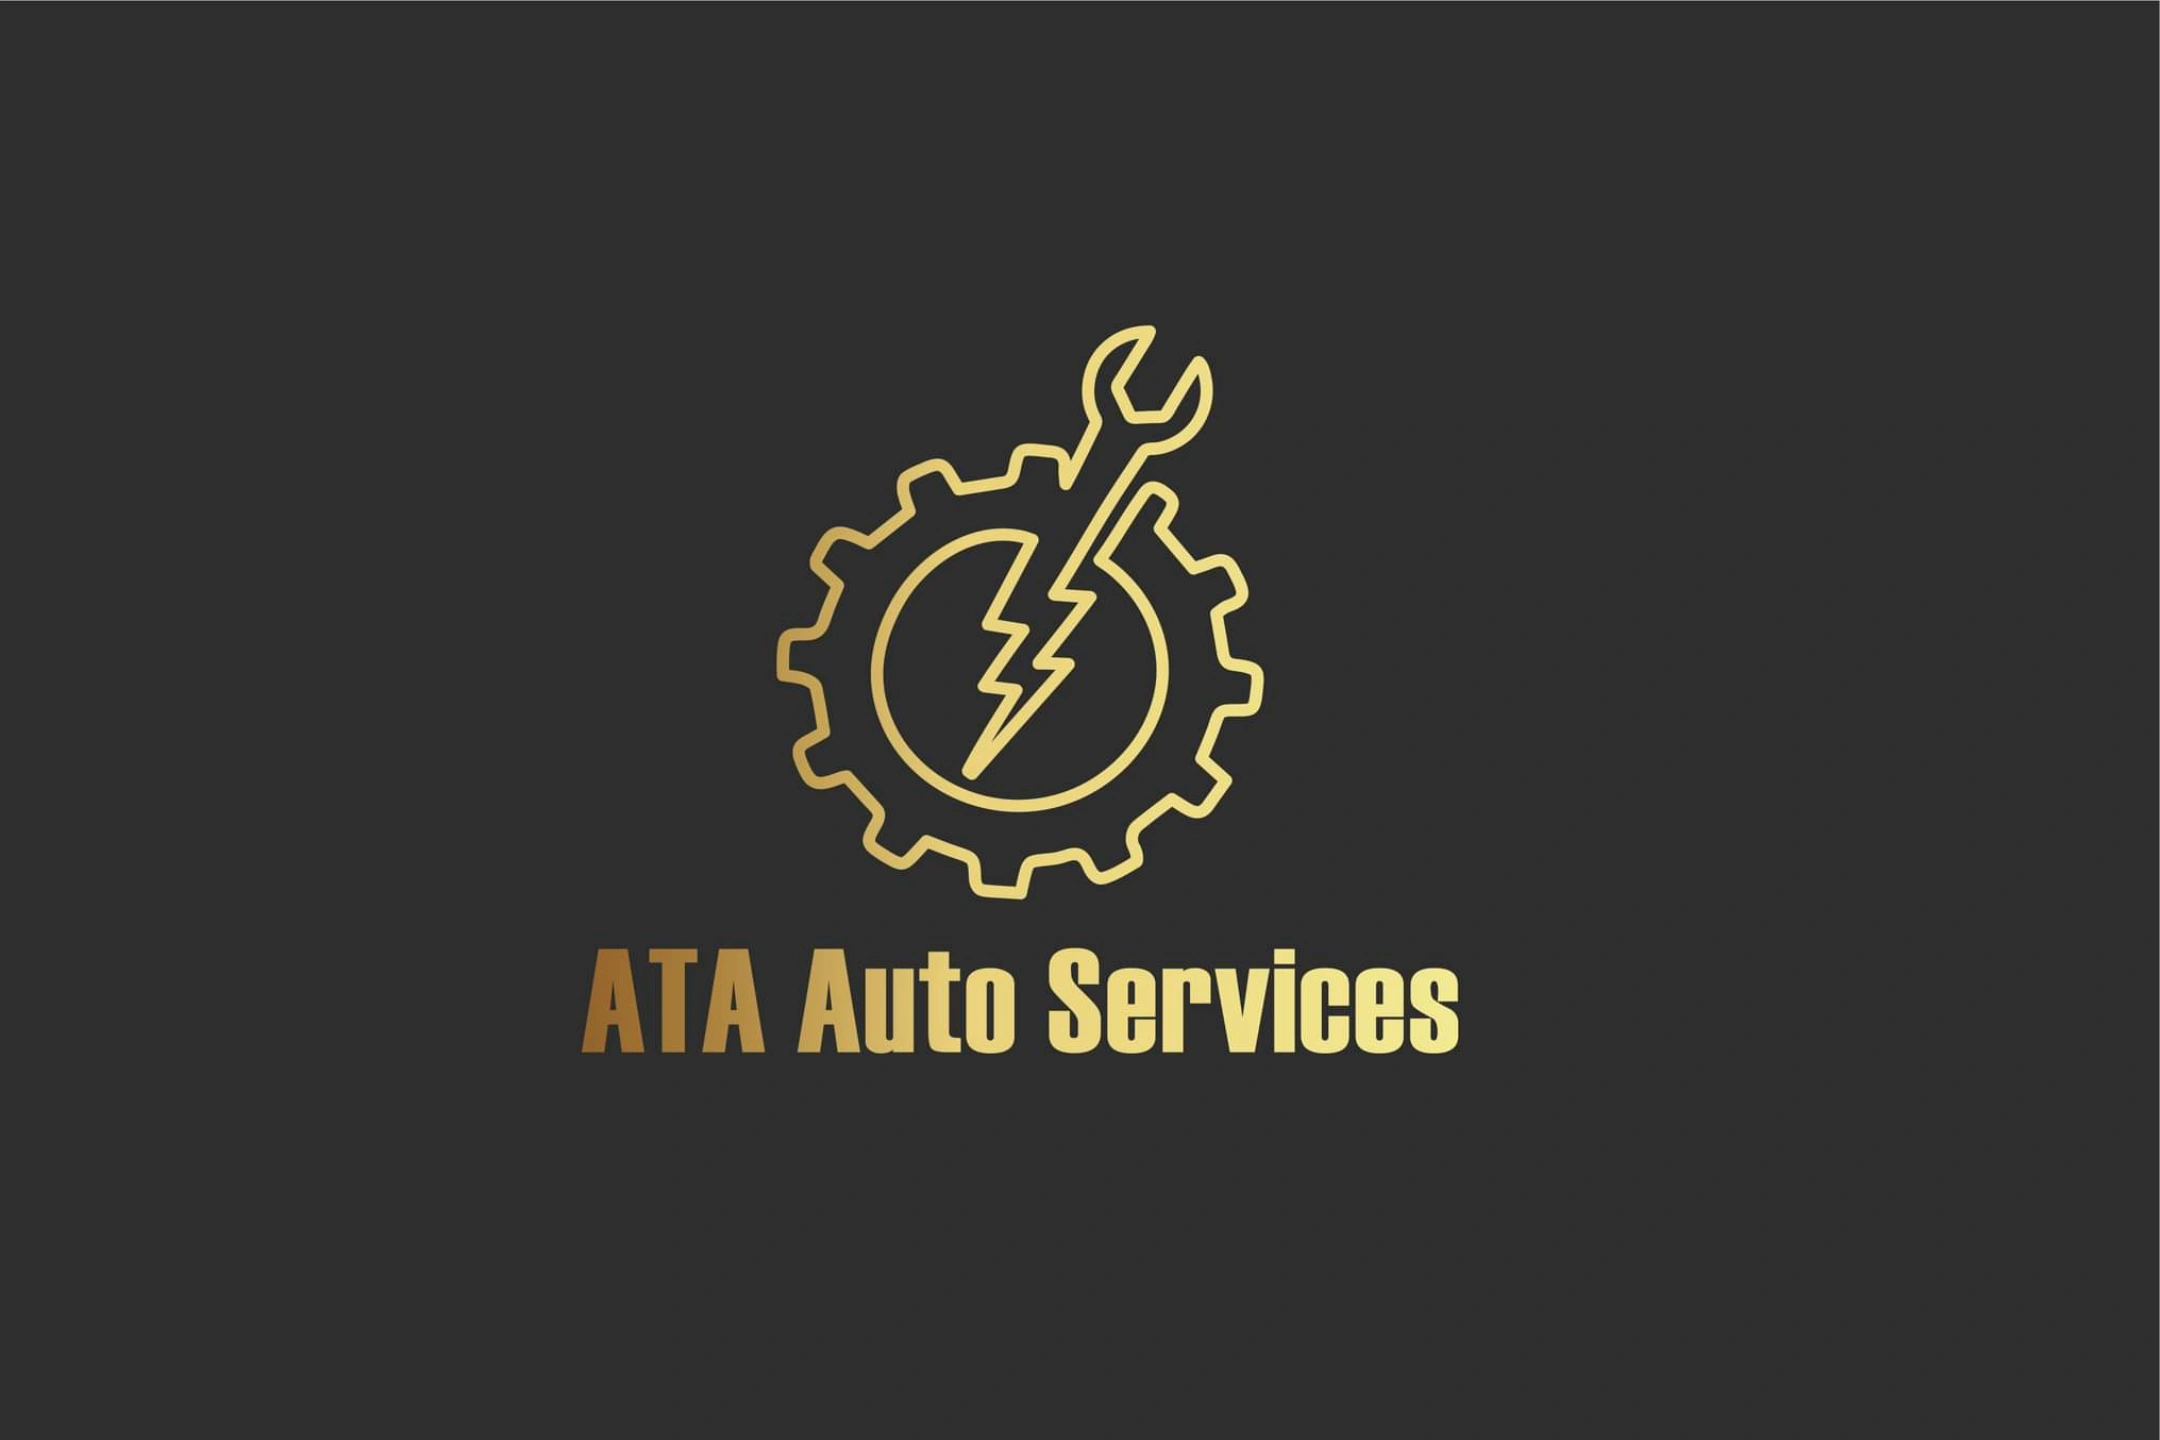 ATA Auto Services - Home